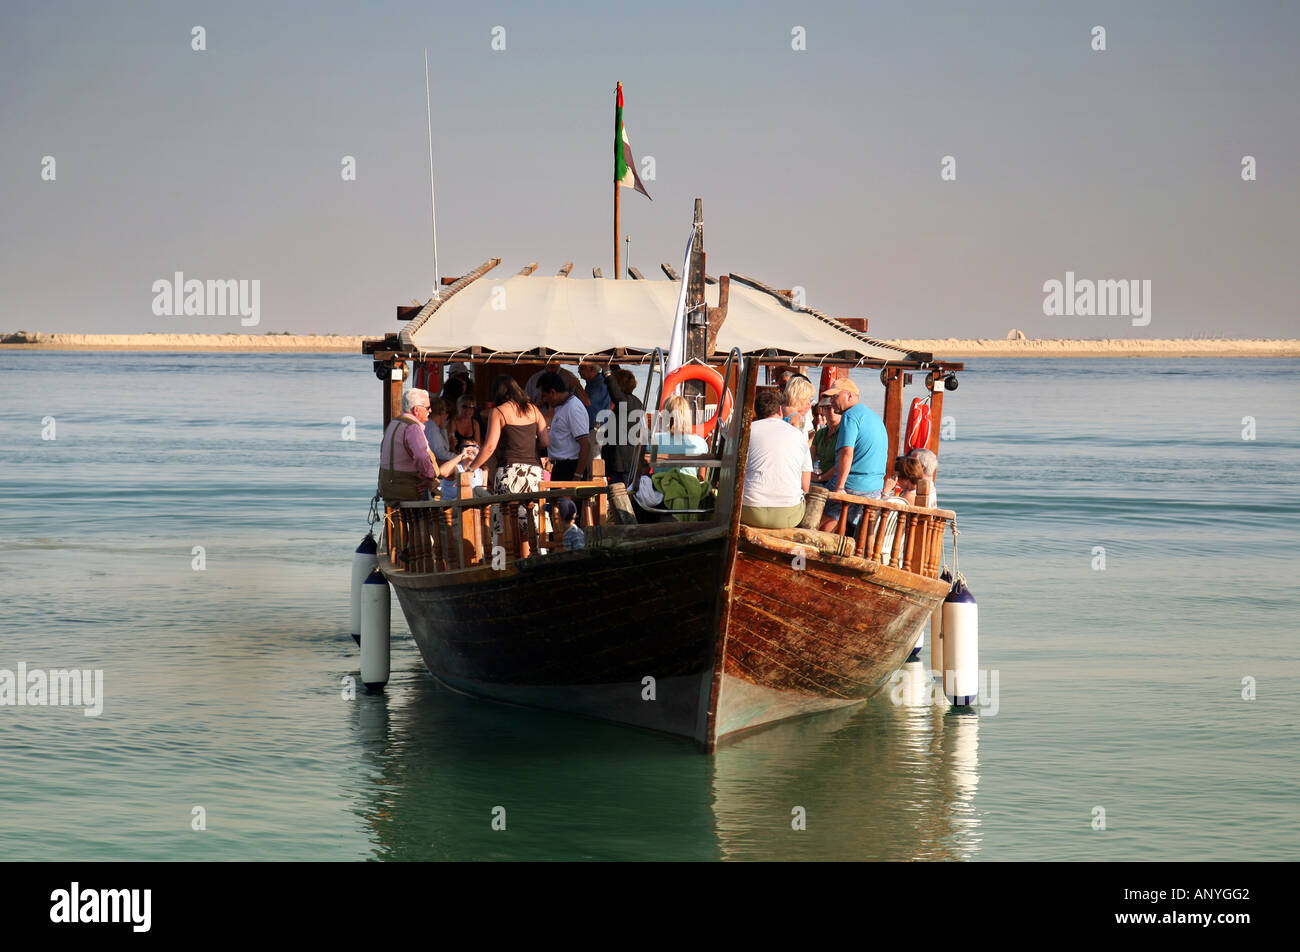 Vorderansicht von einer traditionellen hölzernen Dhau flott mit einer Gruppe von Touristen an Bord, Abu Dhabi, Vereinigte Arabische Emirate Stockfoto